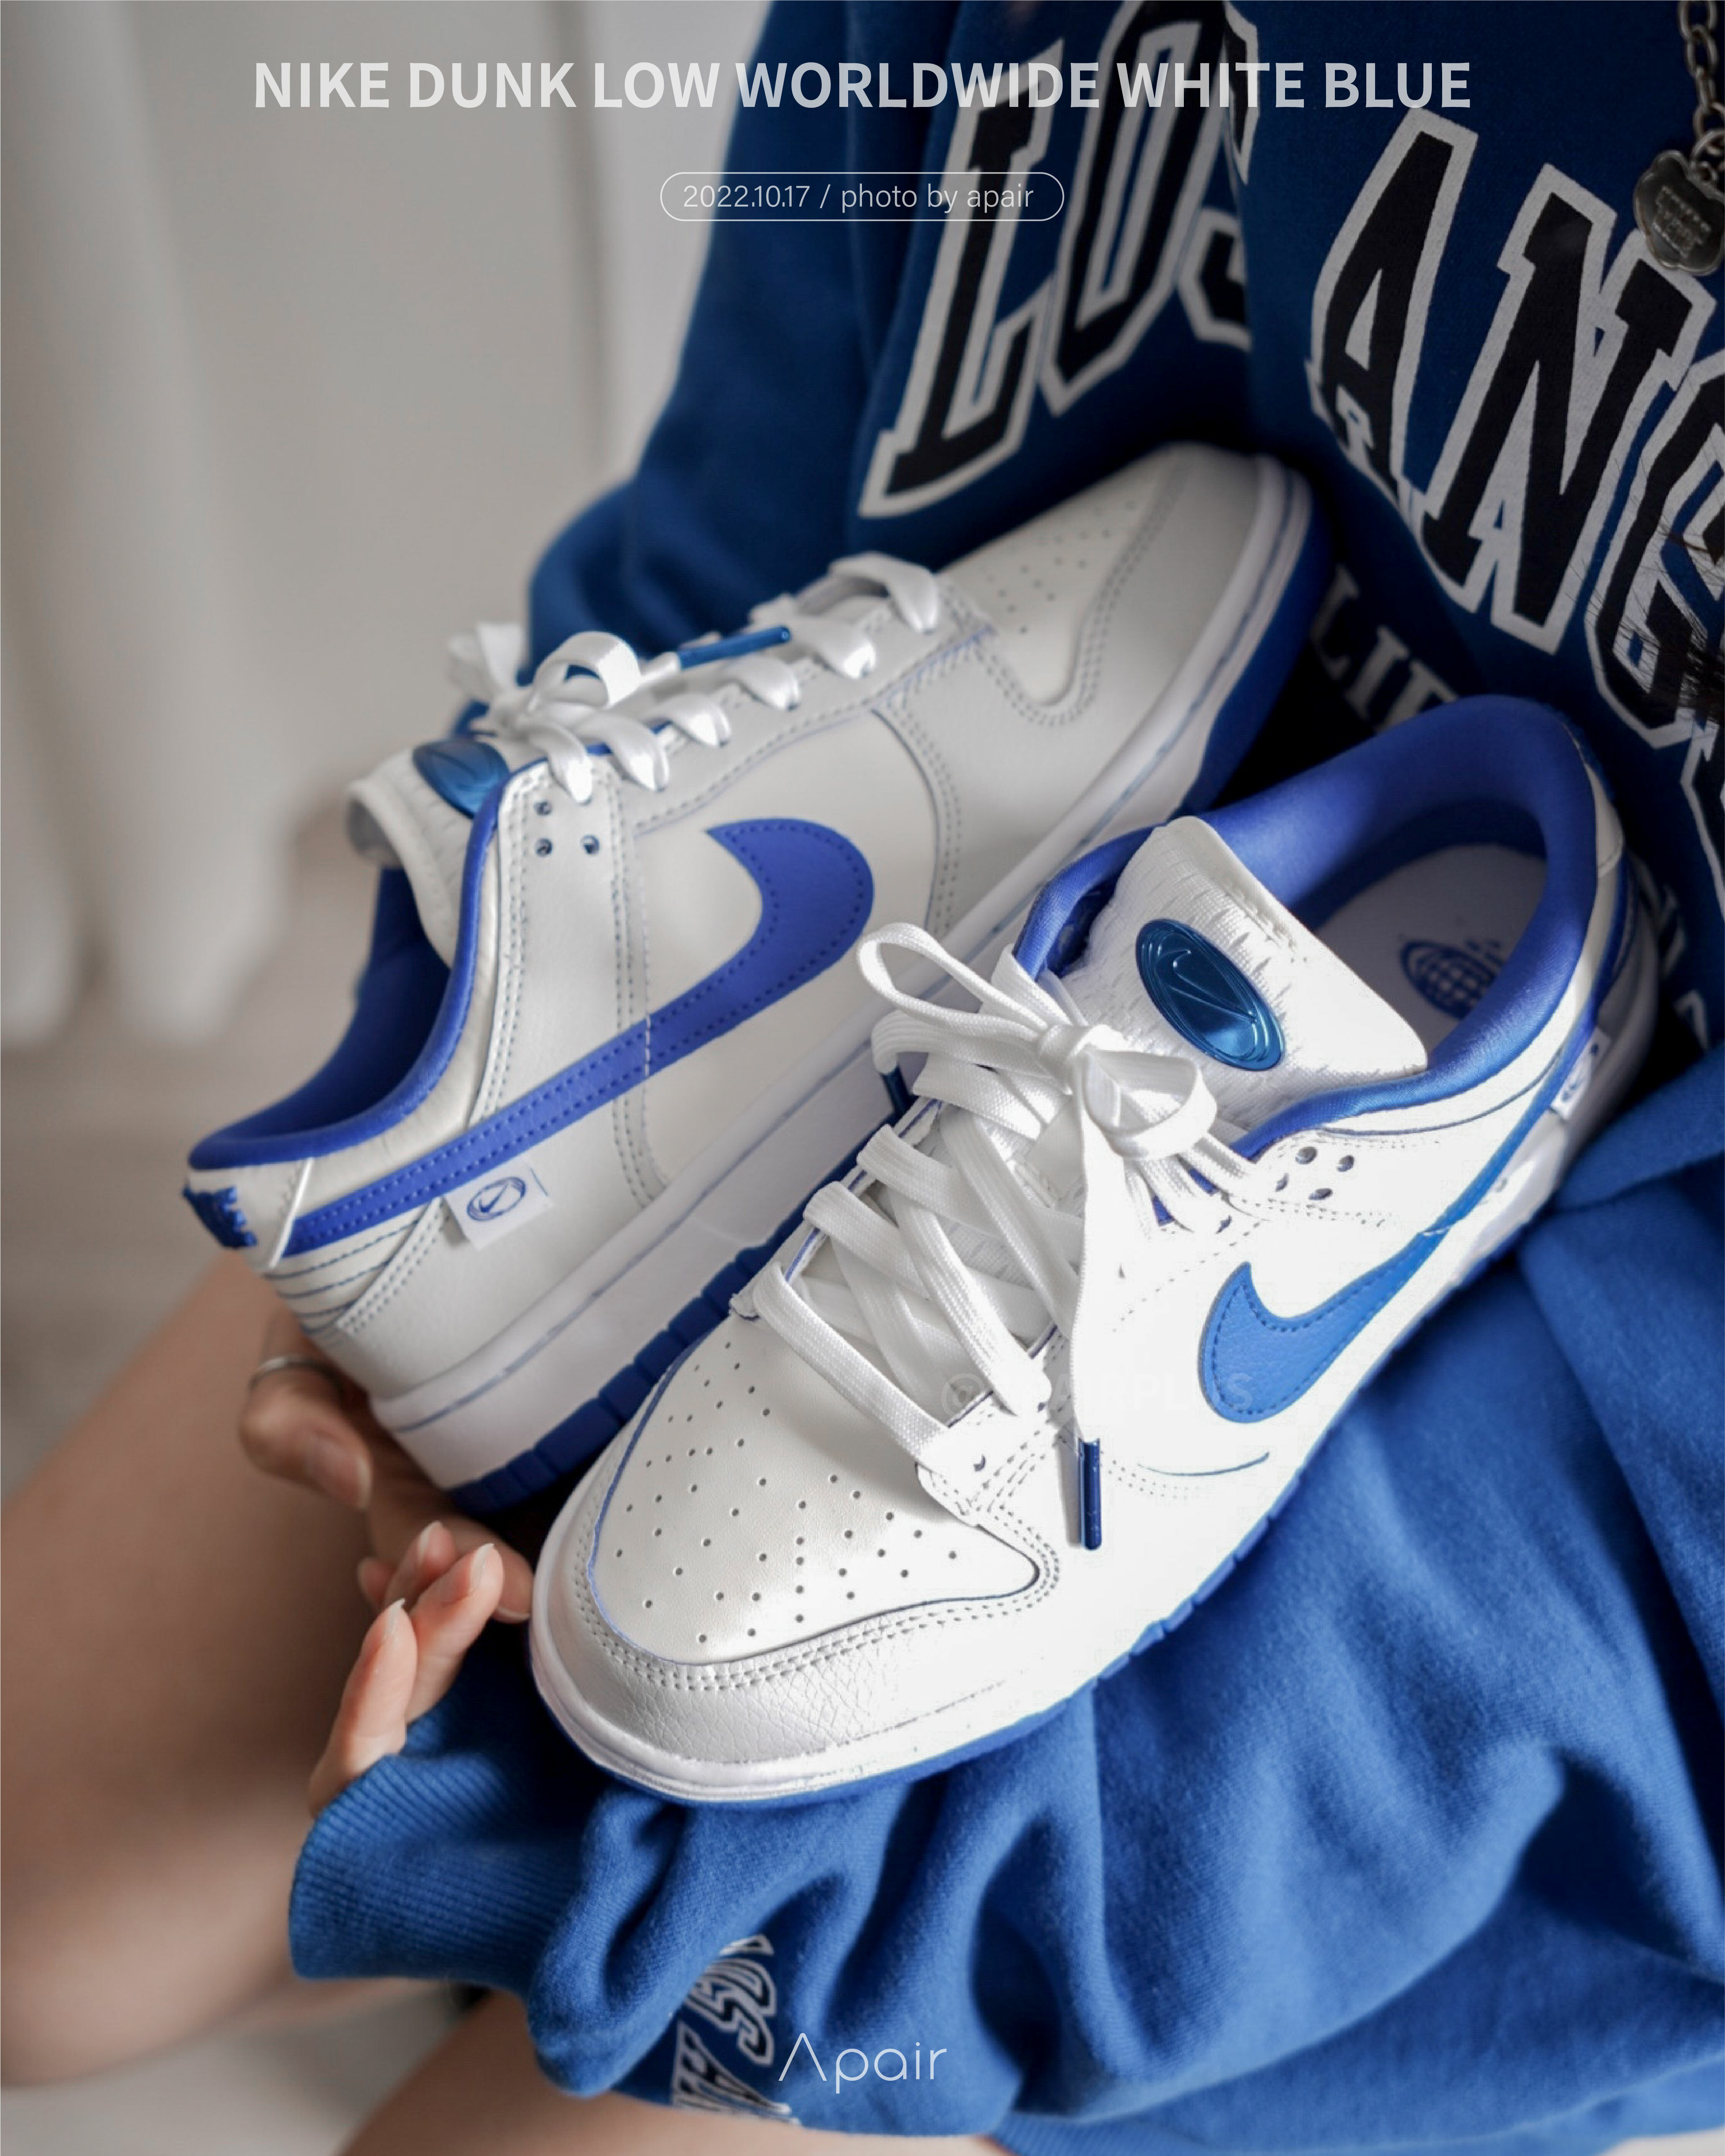 APAIR】現貨Nike Dunk low Worldwide White Blue 白藍女款FB18